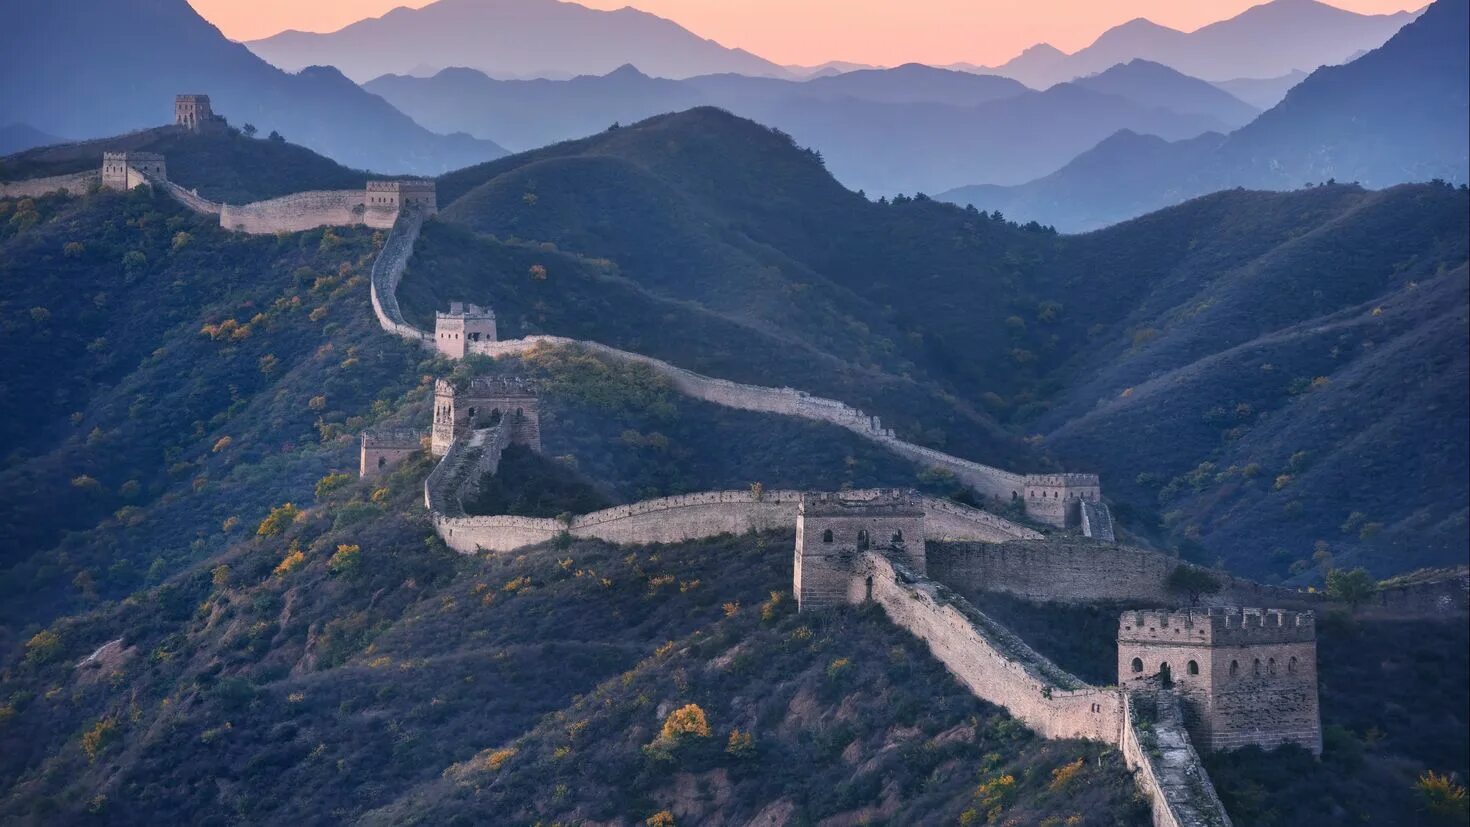 Китайская стена достопримечательность. Великая китайская стена Пекин. Великая китайская стена цинхай. Великая китайская стена на китайском. Великая китайская стена (Северный Китай).